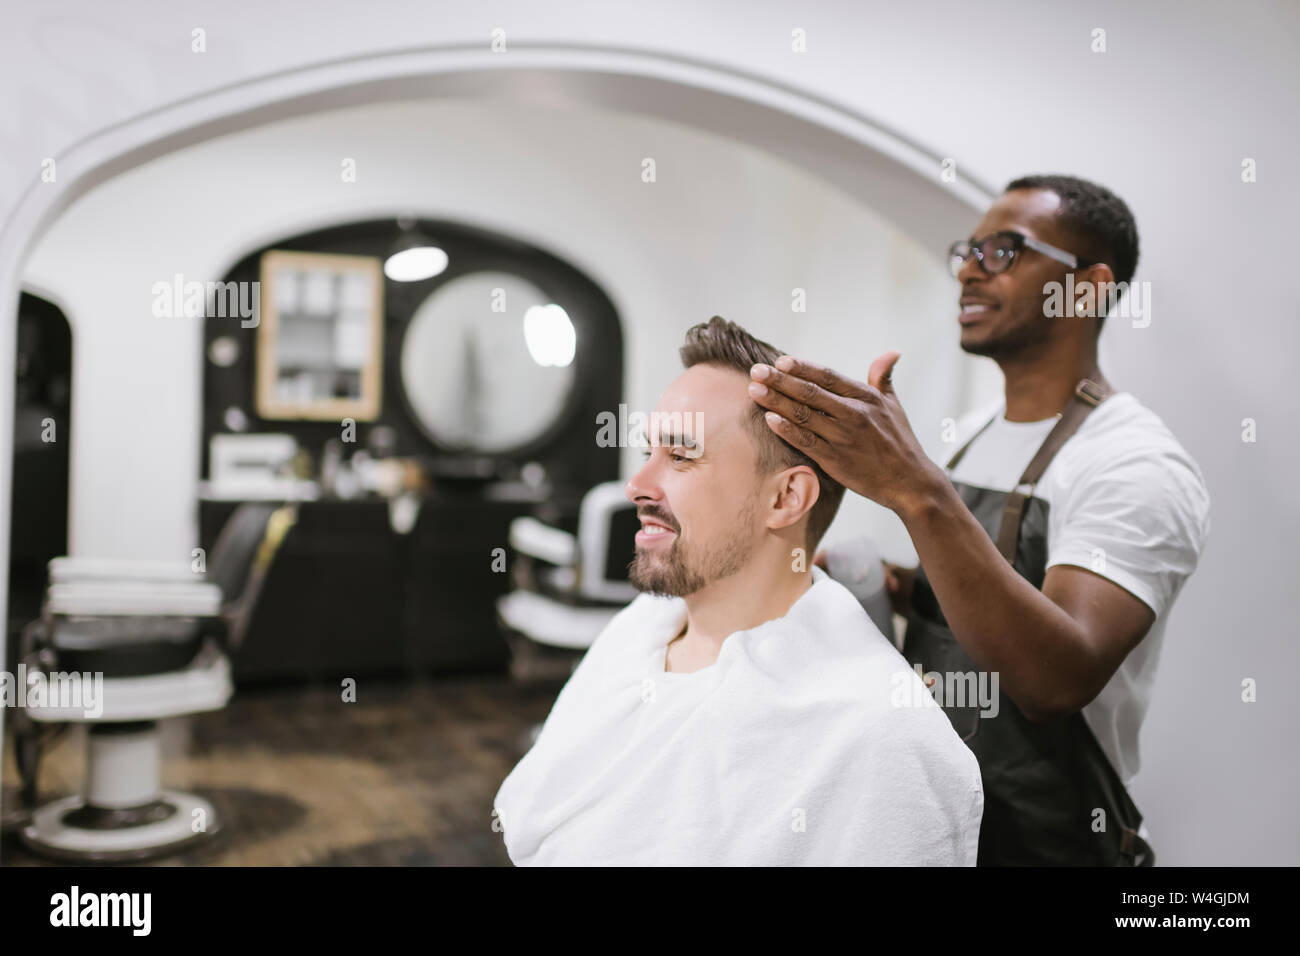 Foto de stock gratuita sobre barbería, barbero, cepillar, cliente